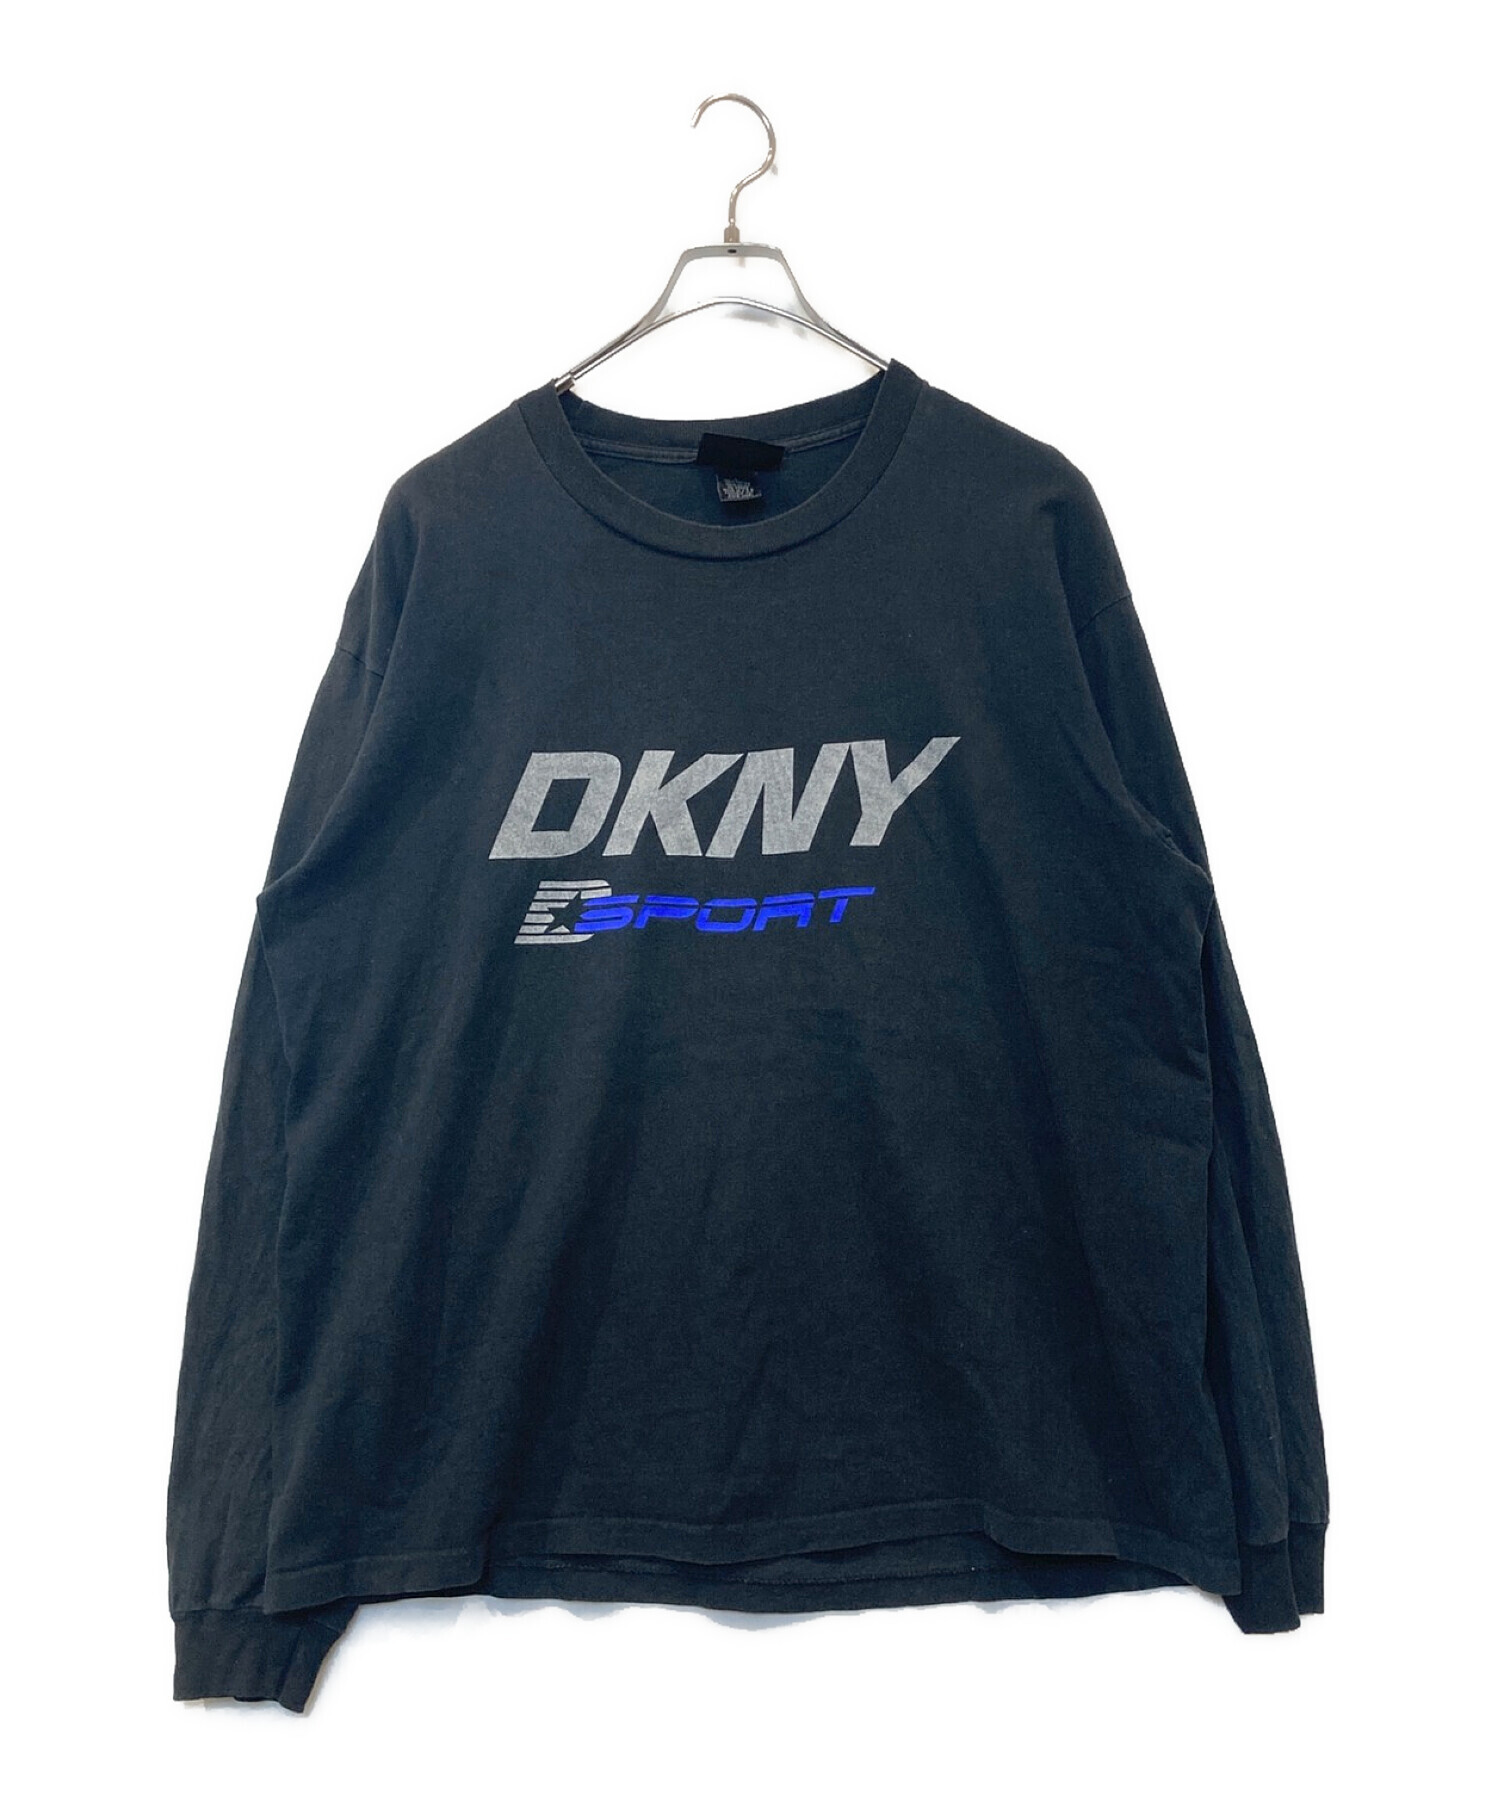 中古・古着通販】DKNY (ダナキャランニューヨーク) ロンT ブラック 